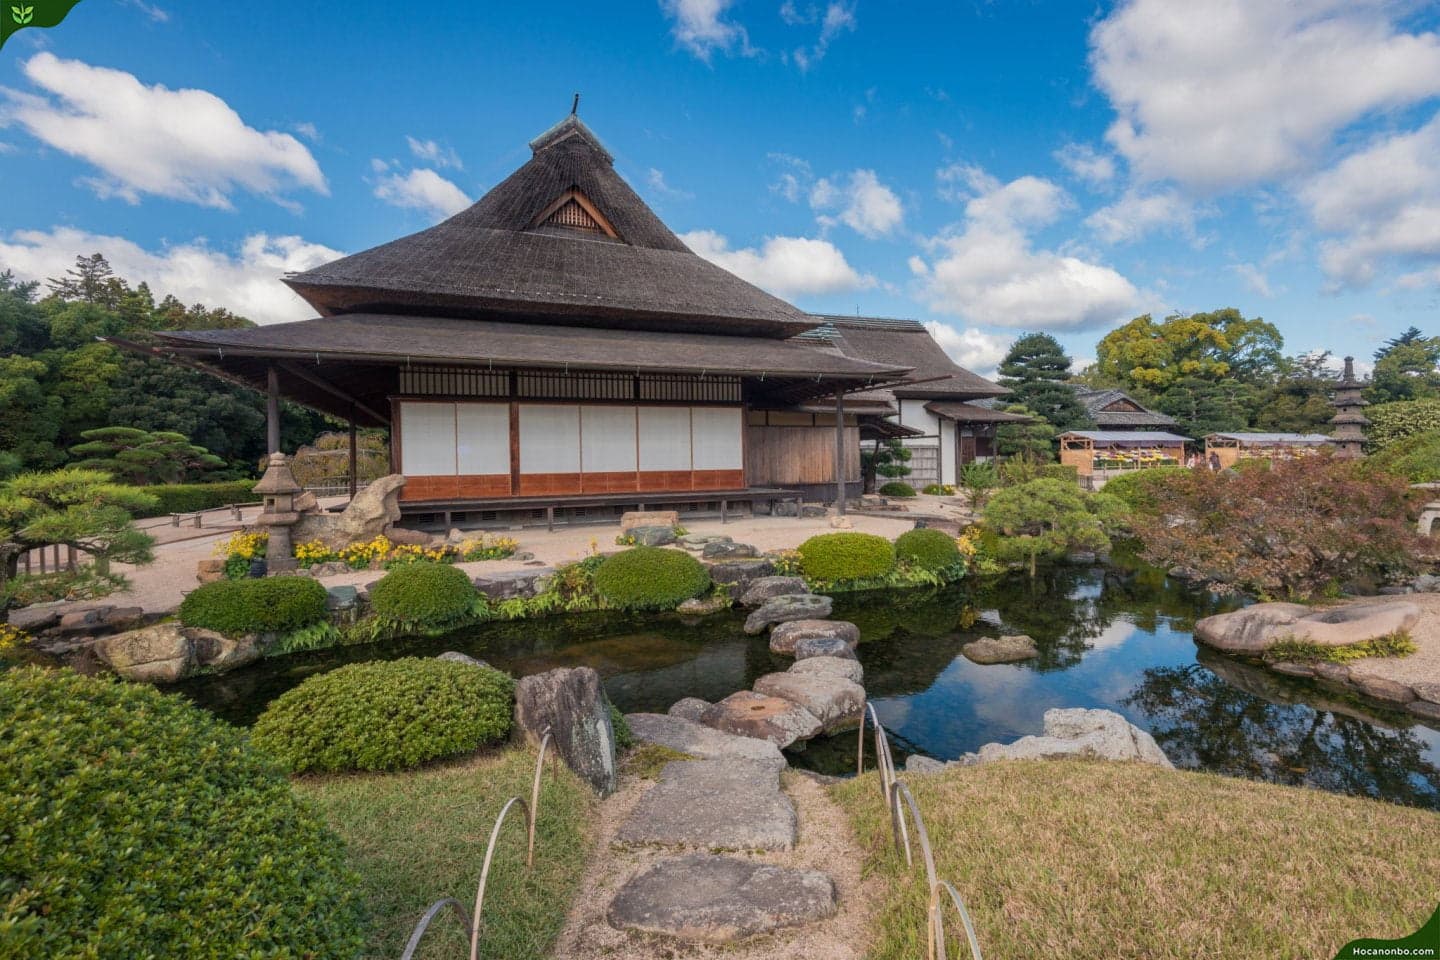 Không gian nhà vườn cổ điển thể hiện sự cổ kính, đậm chất kiến trúc Nhật